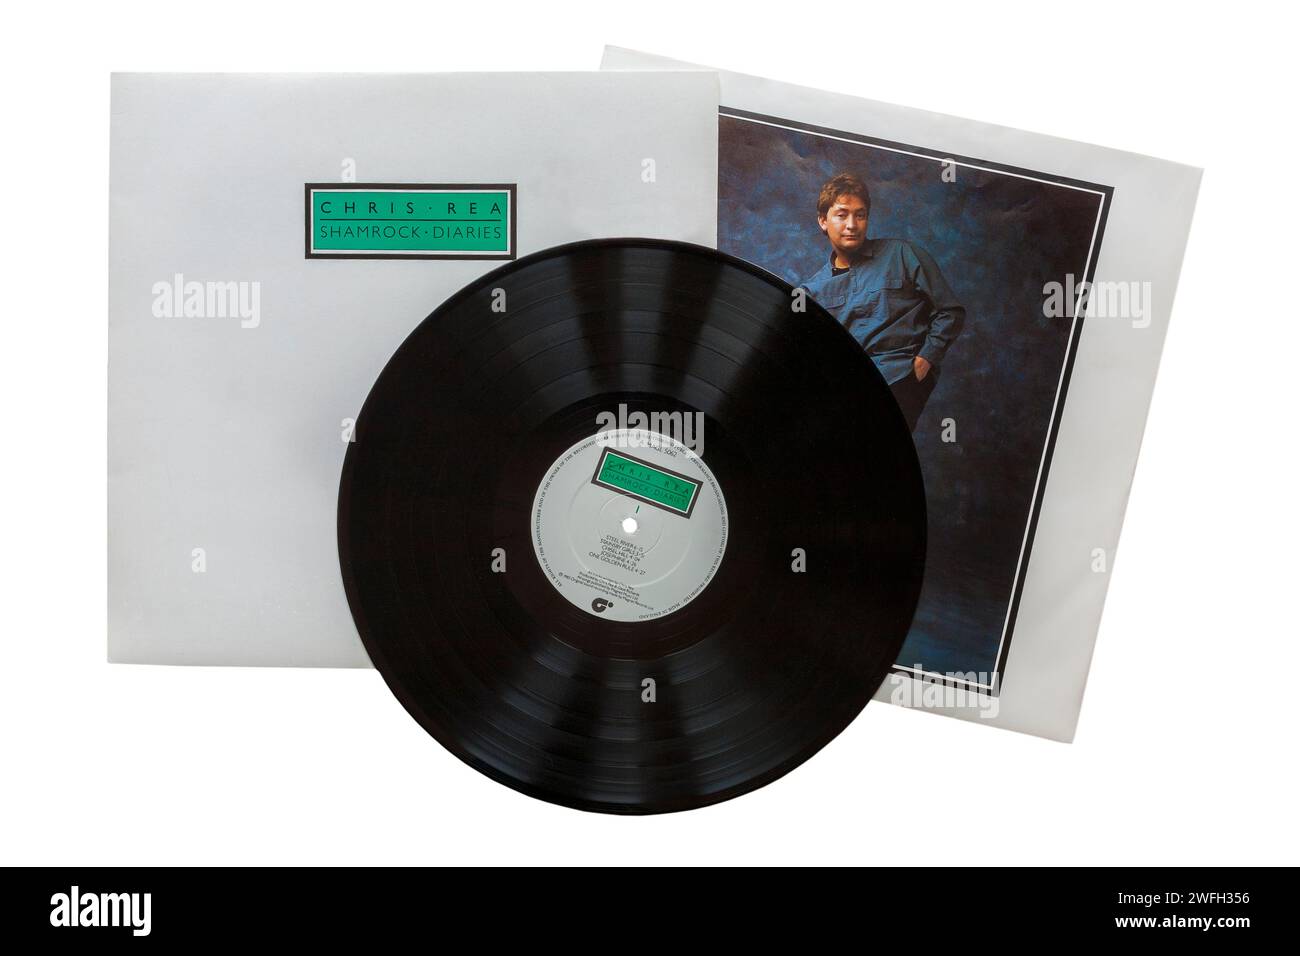 Chris Rea Shamrock Diaries Vinyl-Album-Cover auf weißem Hintergrund - 1985 Stockfoto